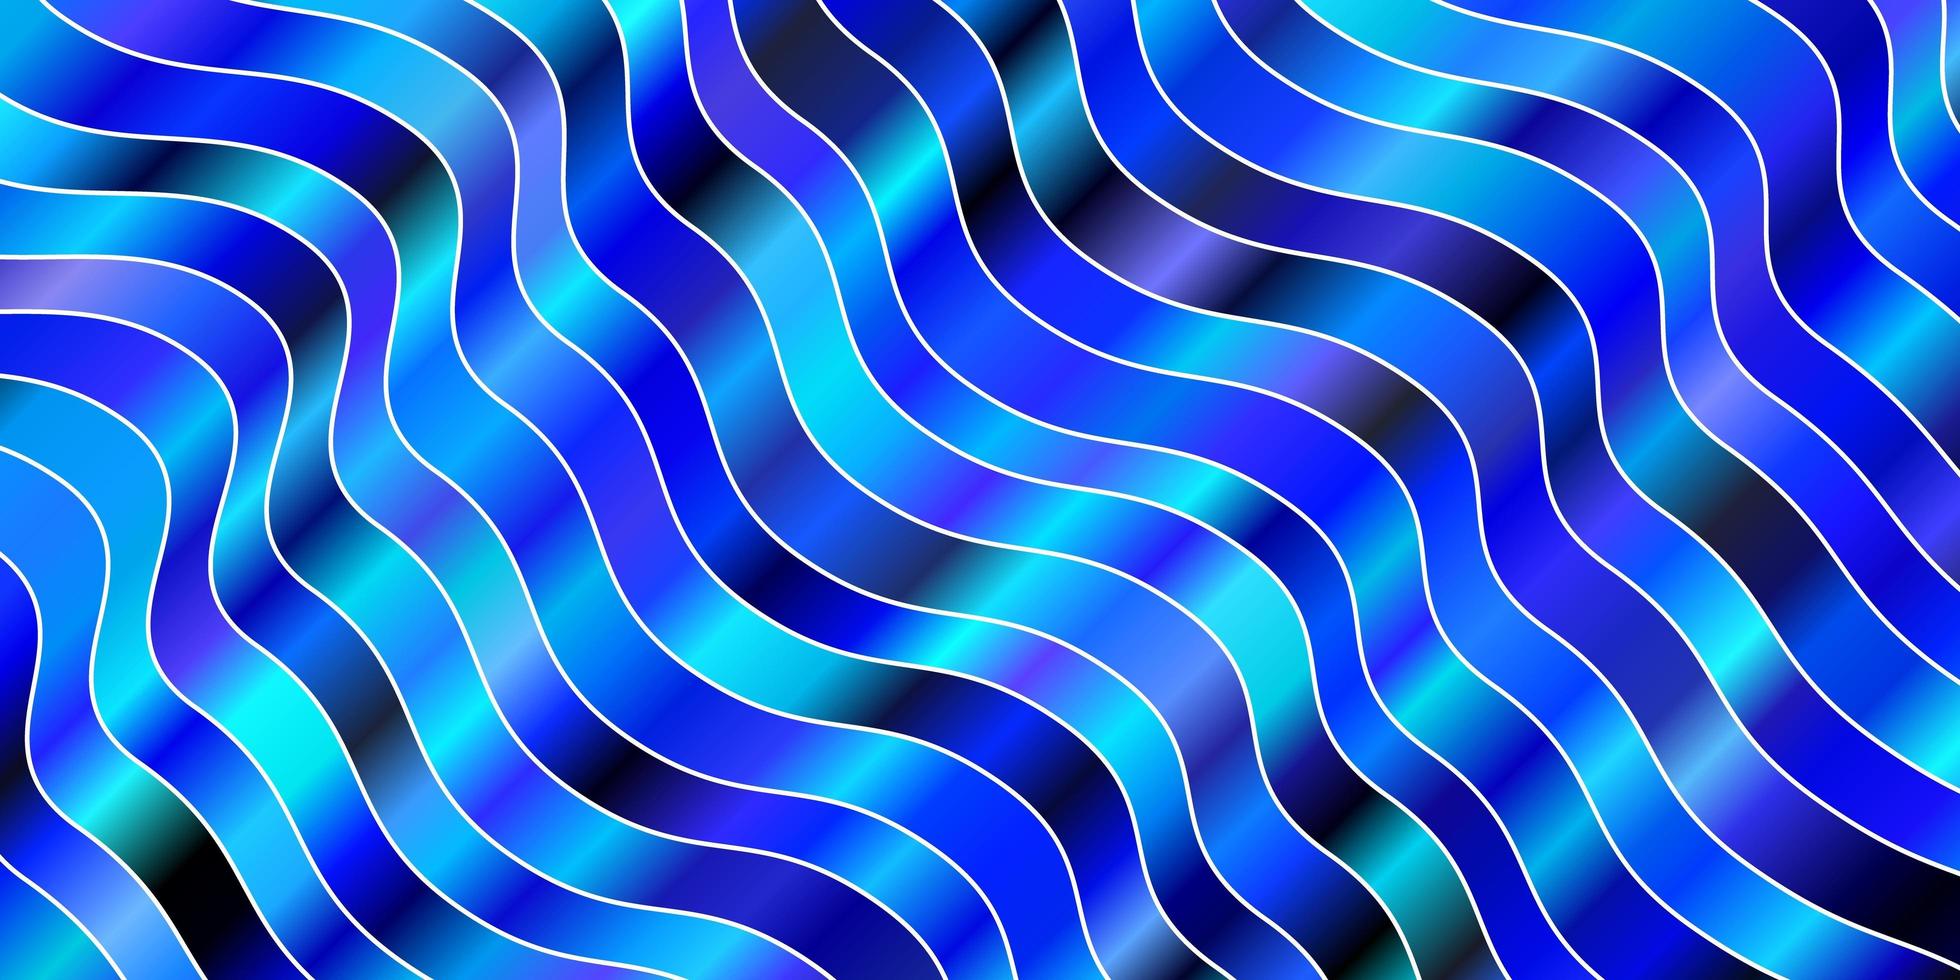 fundo vector azul-de-rosa escuro com linhas curvas